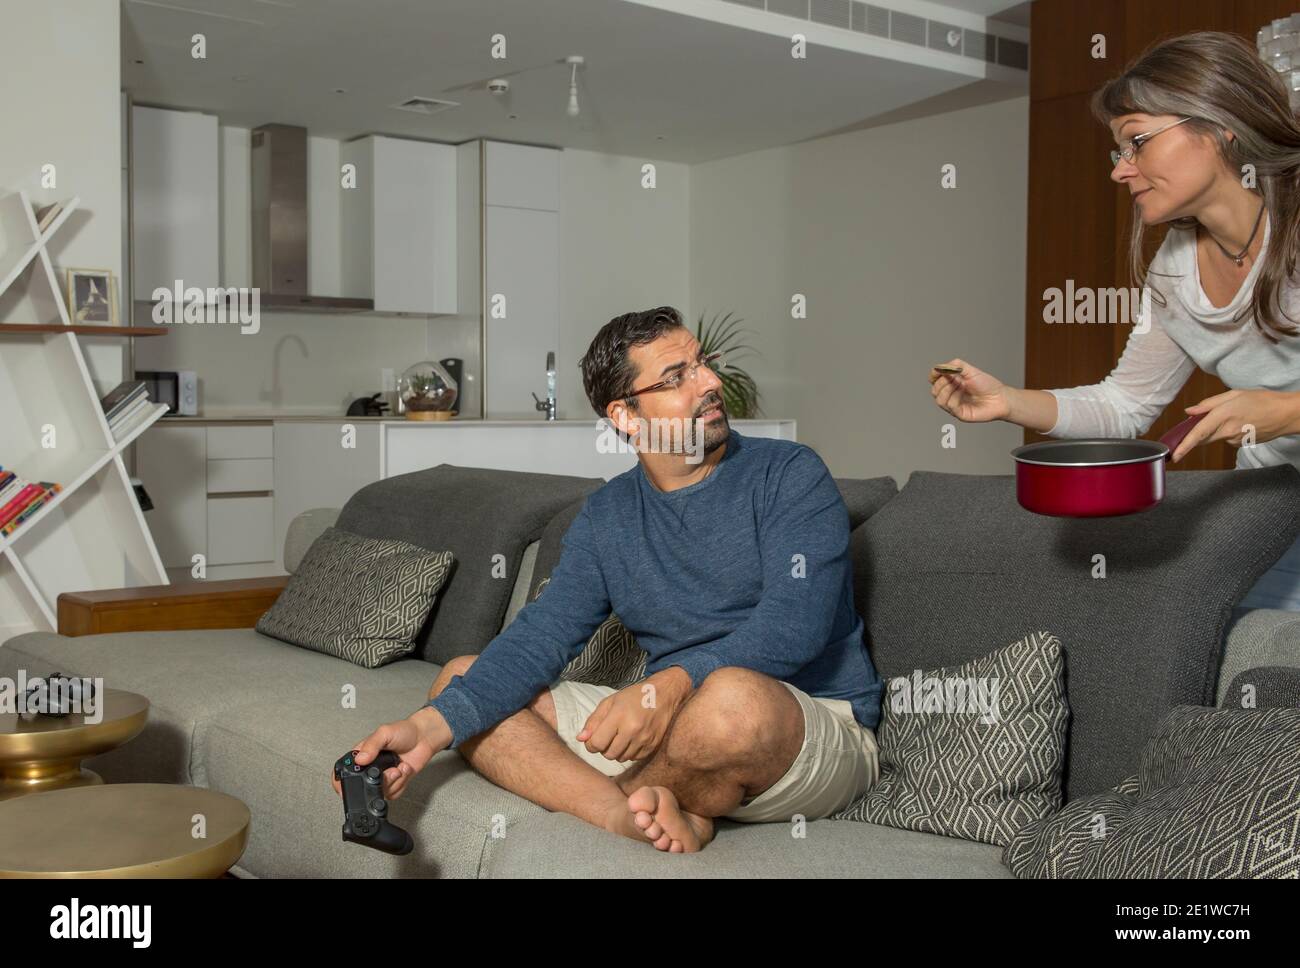 la donna sta cercando di nutrire un uomo che è occupato giocare a videogiochi nel tuo appartamento cittadino Foto Stock